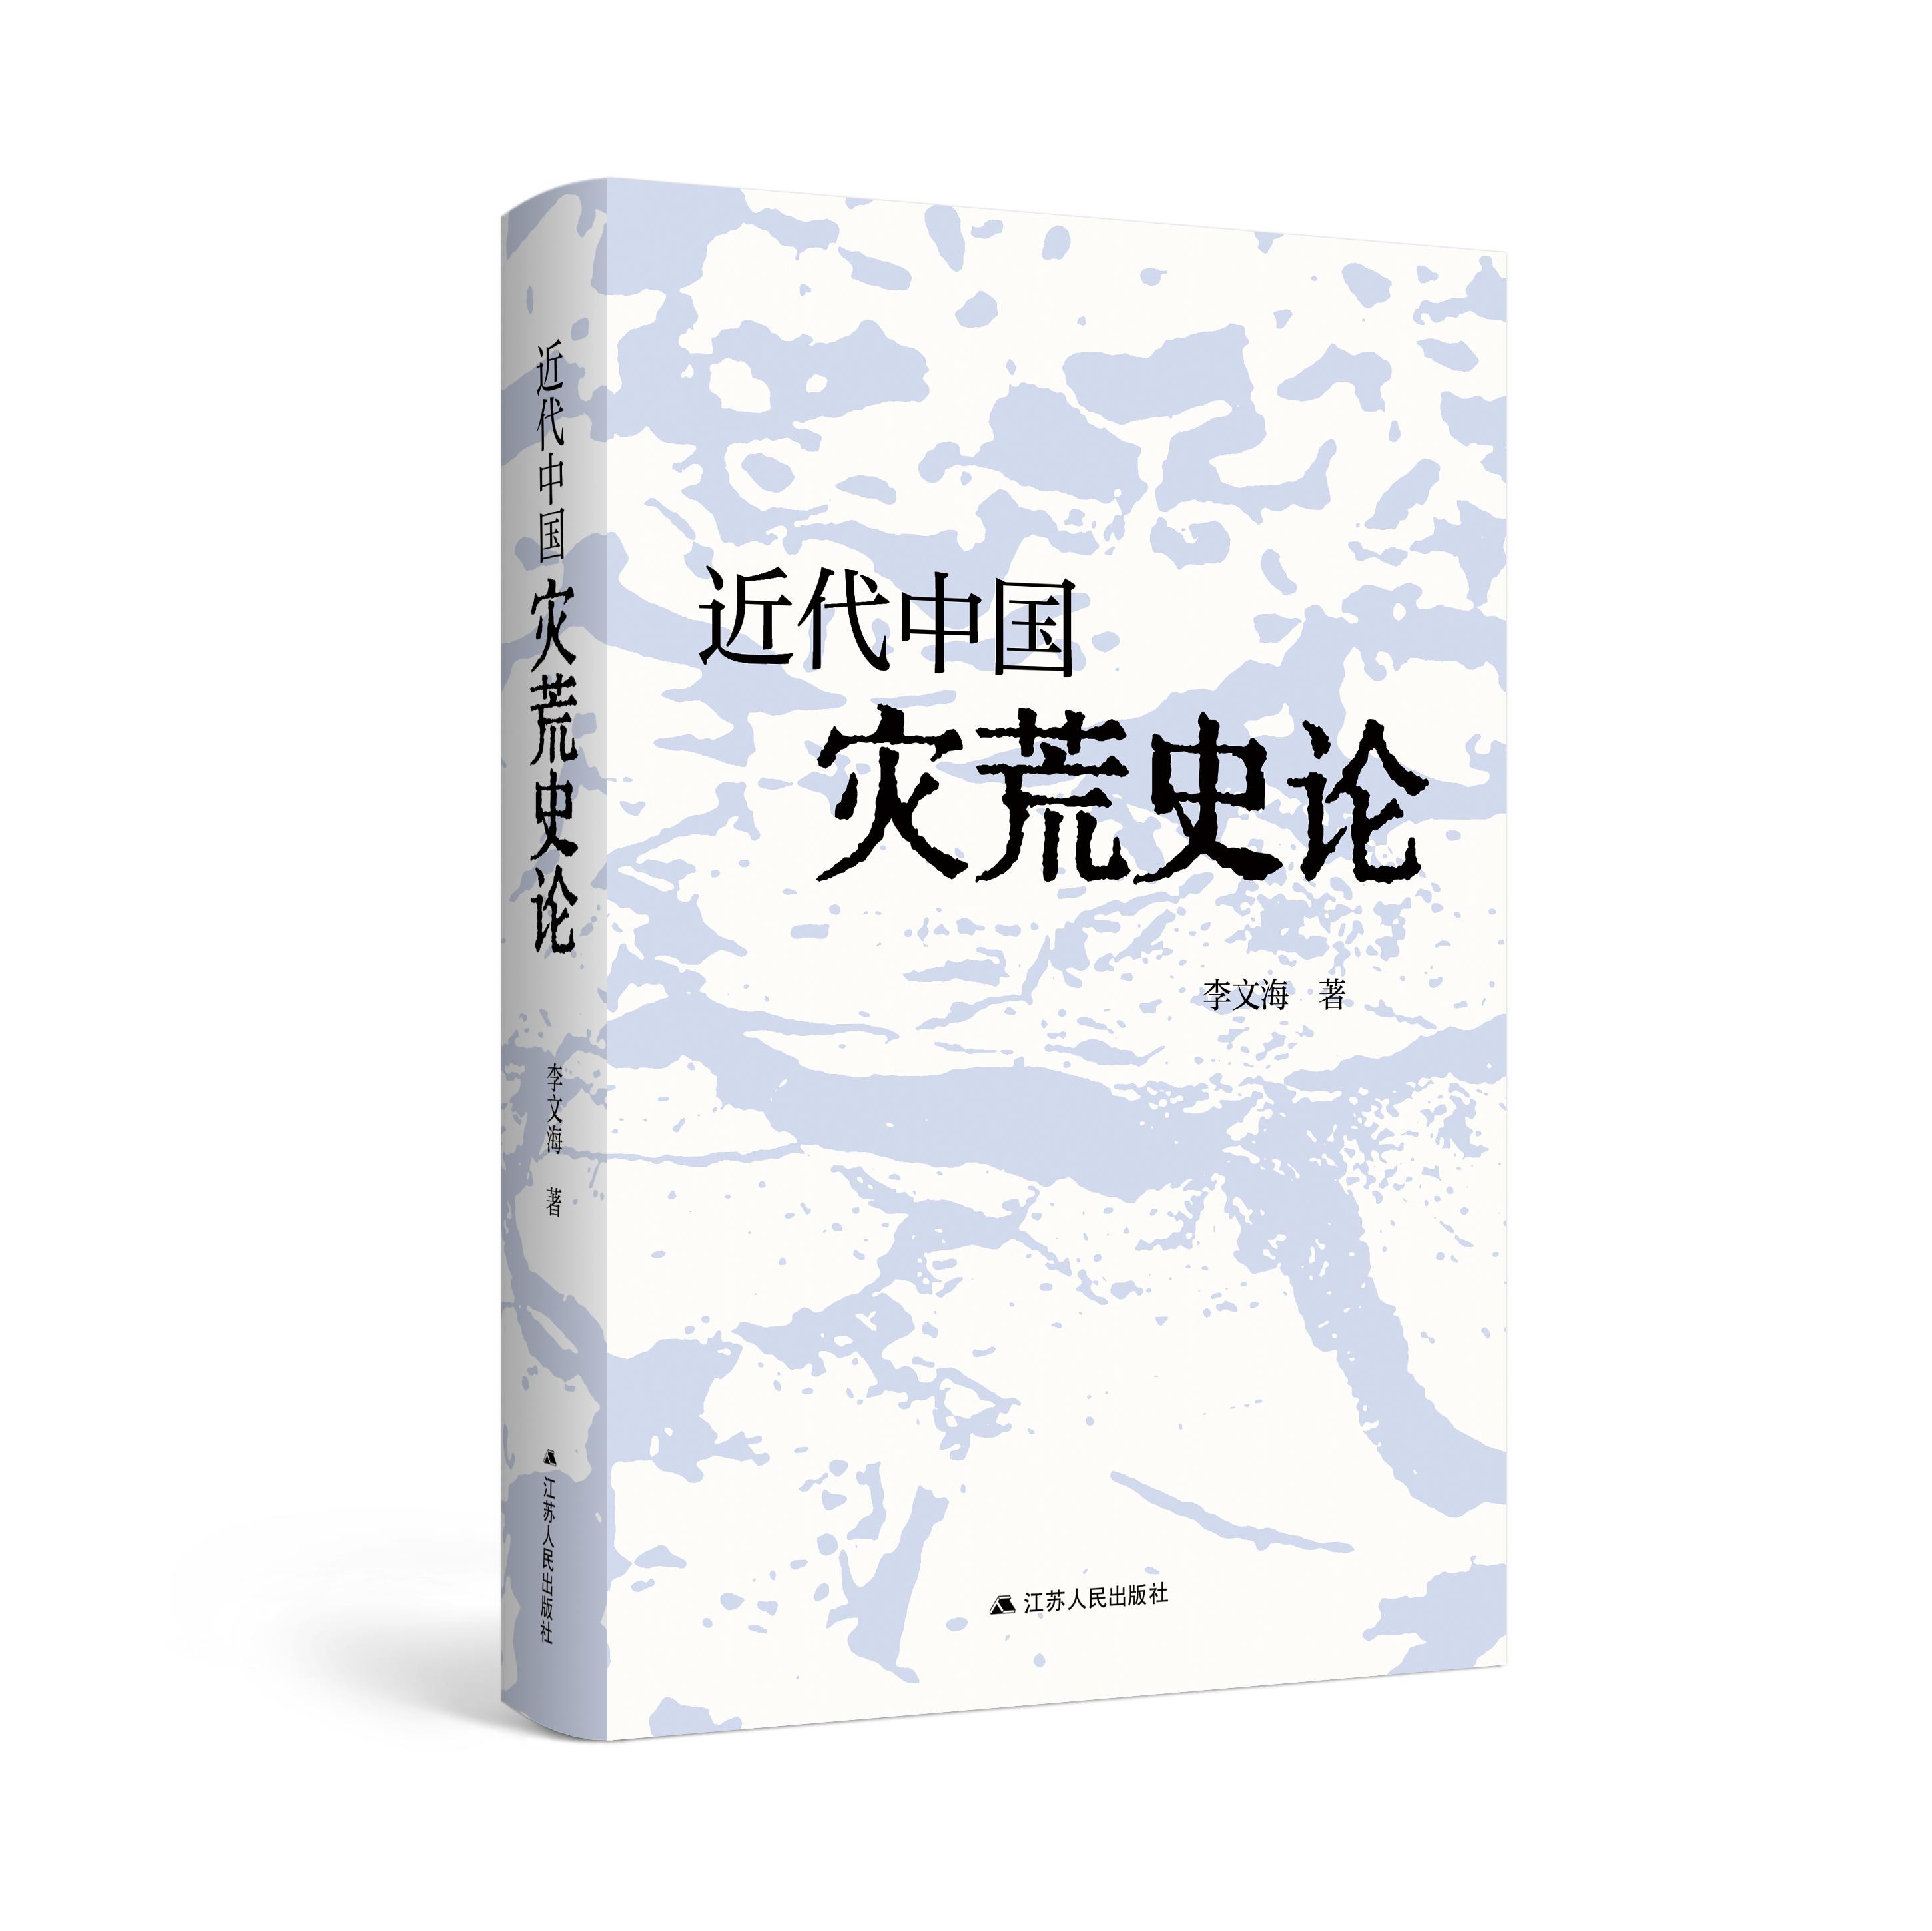 近代中国灾荒史论   从灾荒同政治、经济、思想文化等的相互关系中,可以揭示出社会历史发展的许多本质内容